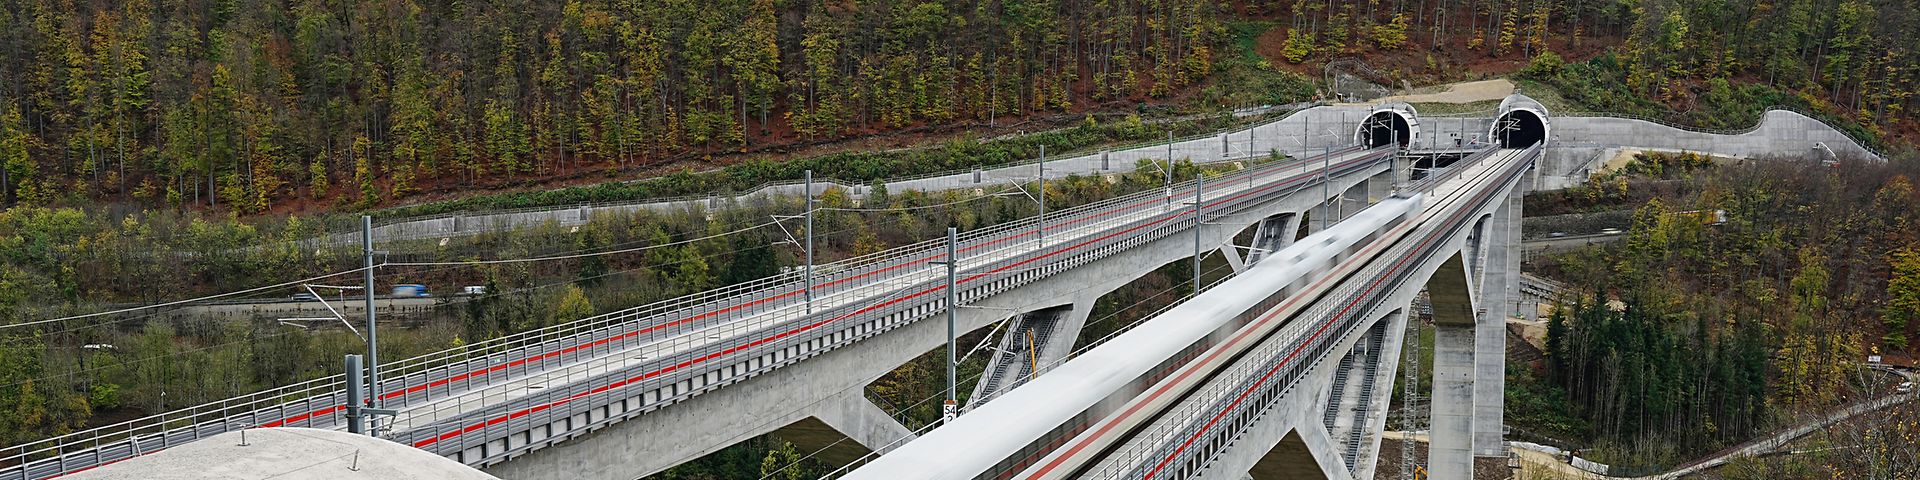 SFS Wendlingen-Ulm - Testfahrten im Bereich der Filstalbrücke